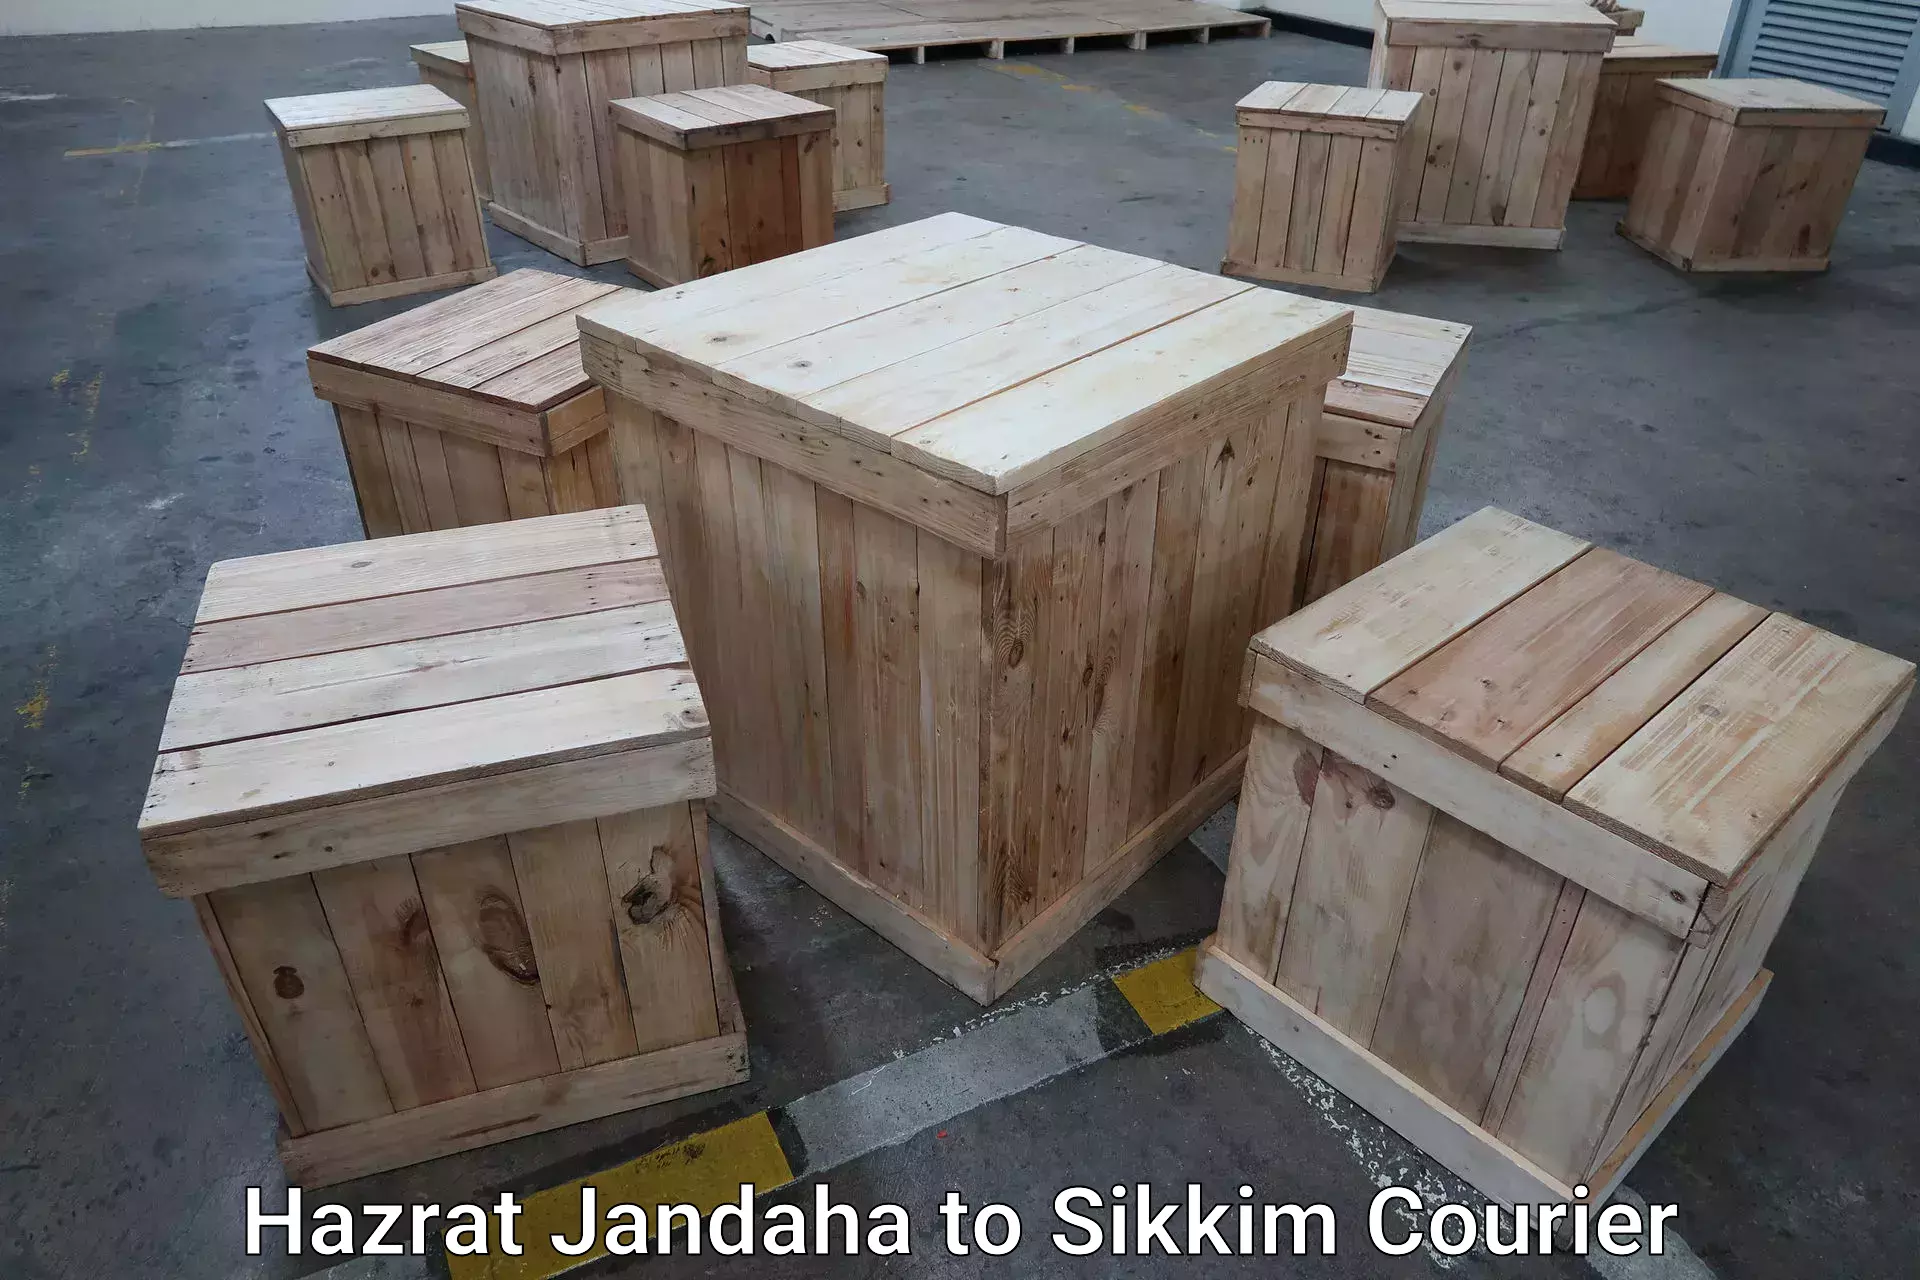 Urgent luggage shipment Hazrat Jandaha to Sikkim